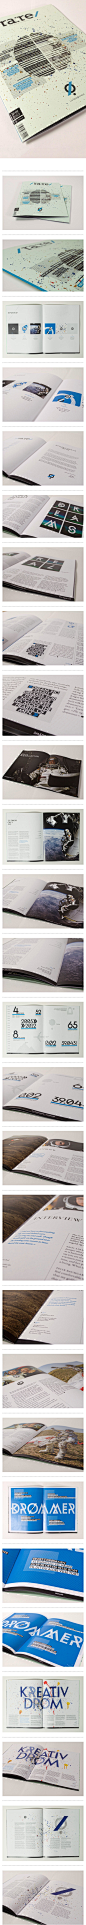 Rare Magazine  画册设计 平面 排版 版式  design book #采集大赛# #平面#【之所以灵感库】 